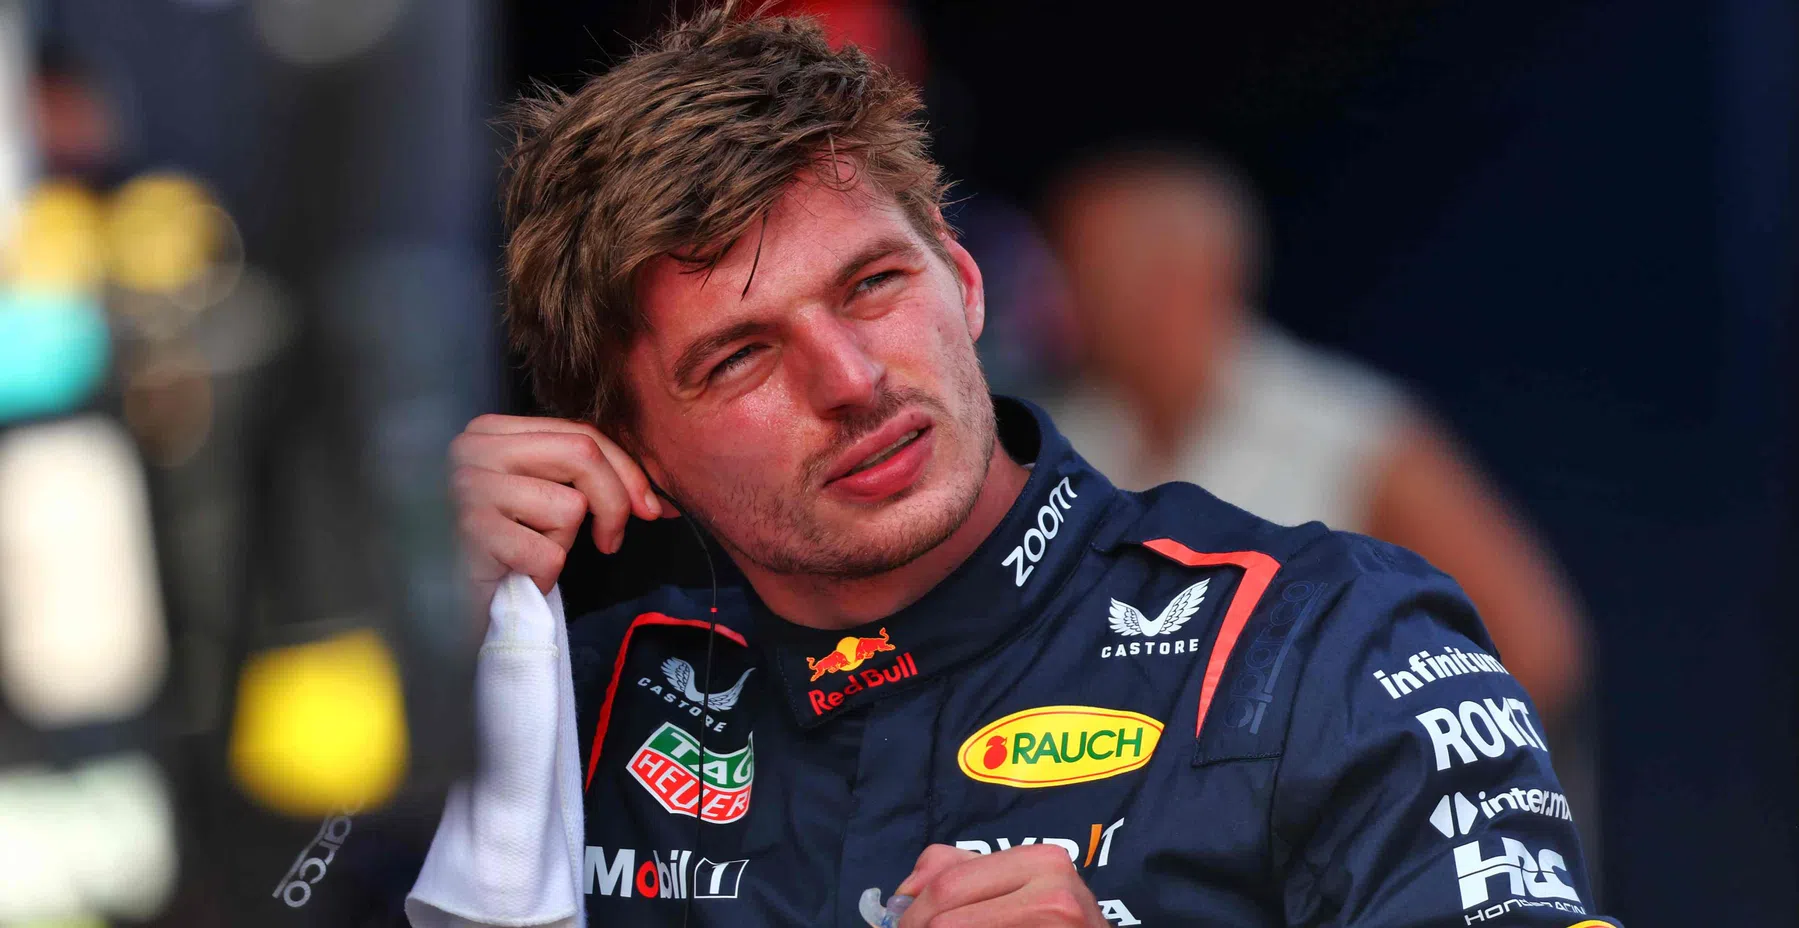 Los analistas de Sky apuntan a Verstappen tras el accidente de Norris